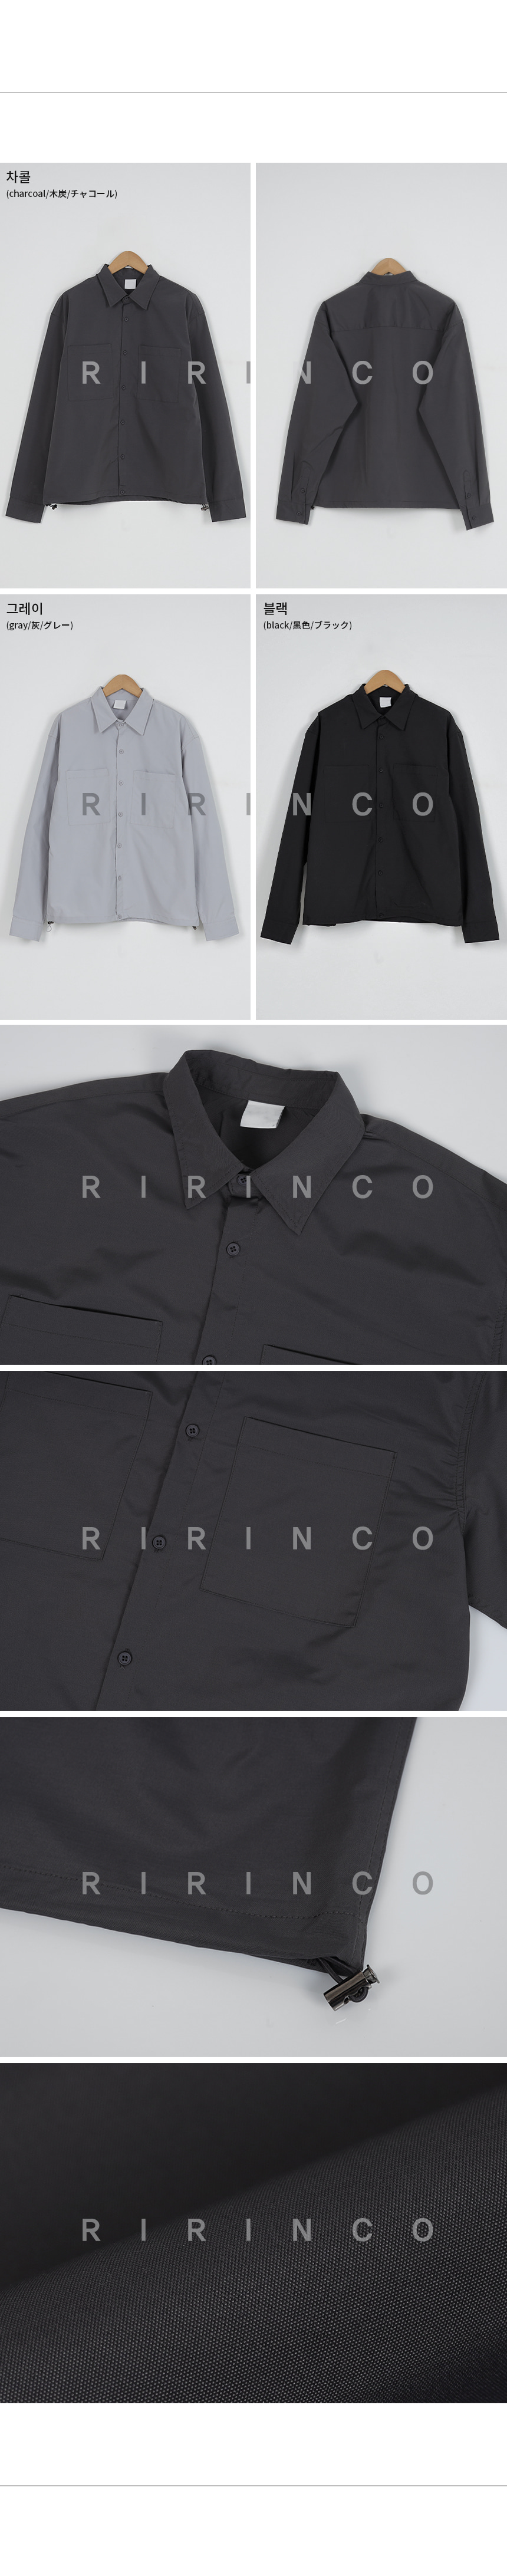 RIRINCO ストリングシャツジャケット